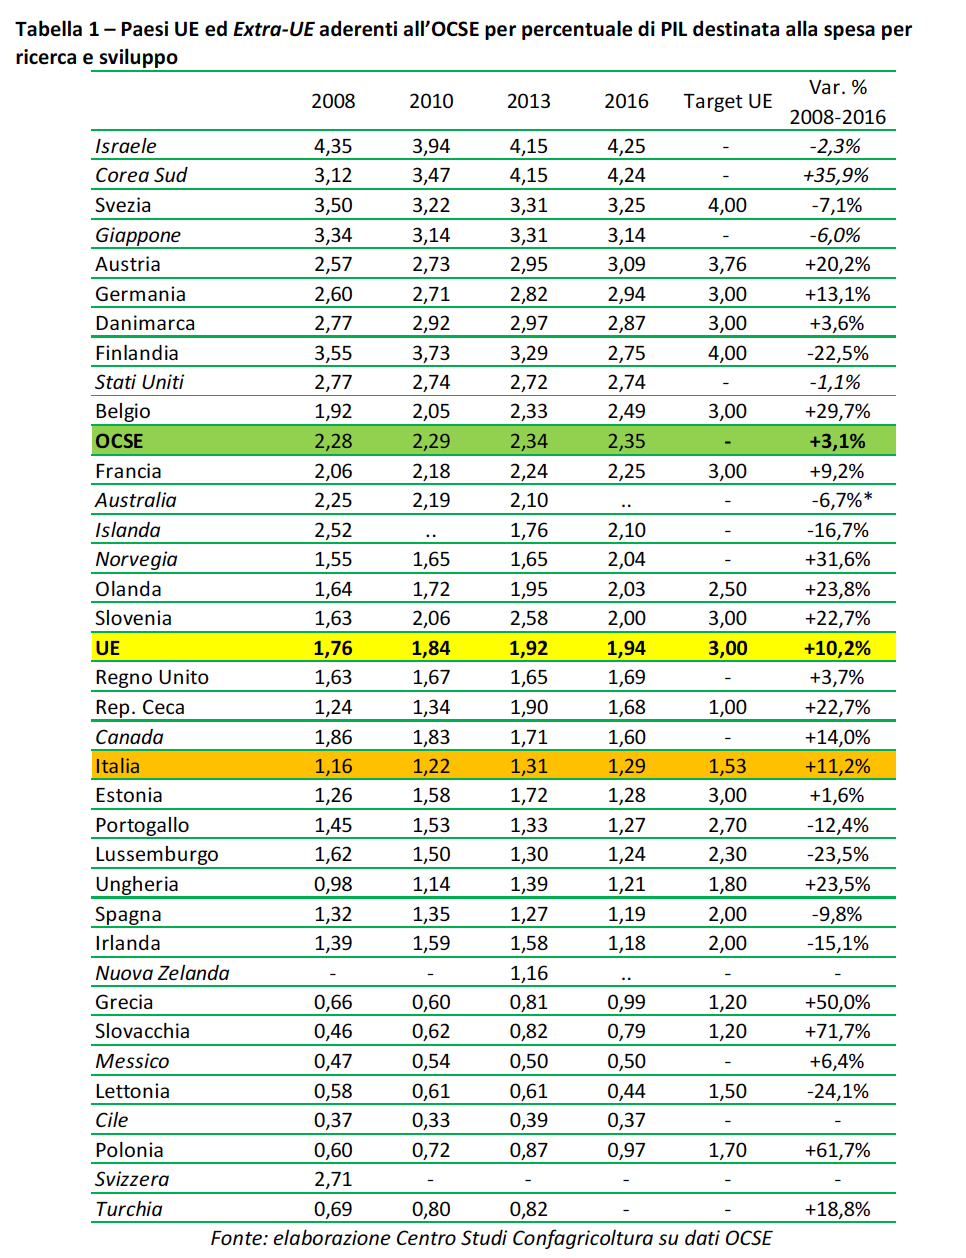 tabella paesi Ue ed extra Ue aderenti all'Ocse per percentuale di Pil destinata alla spesa per ricerca e sviluppo